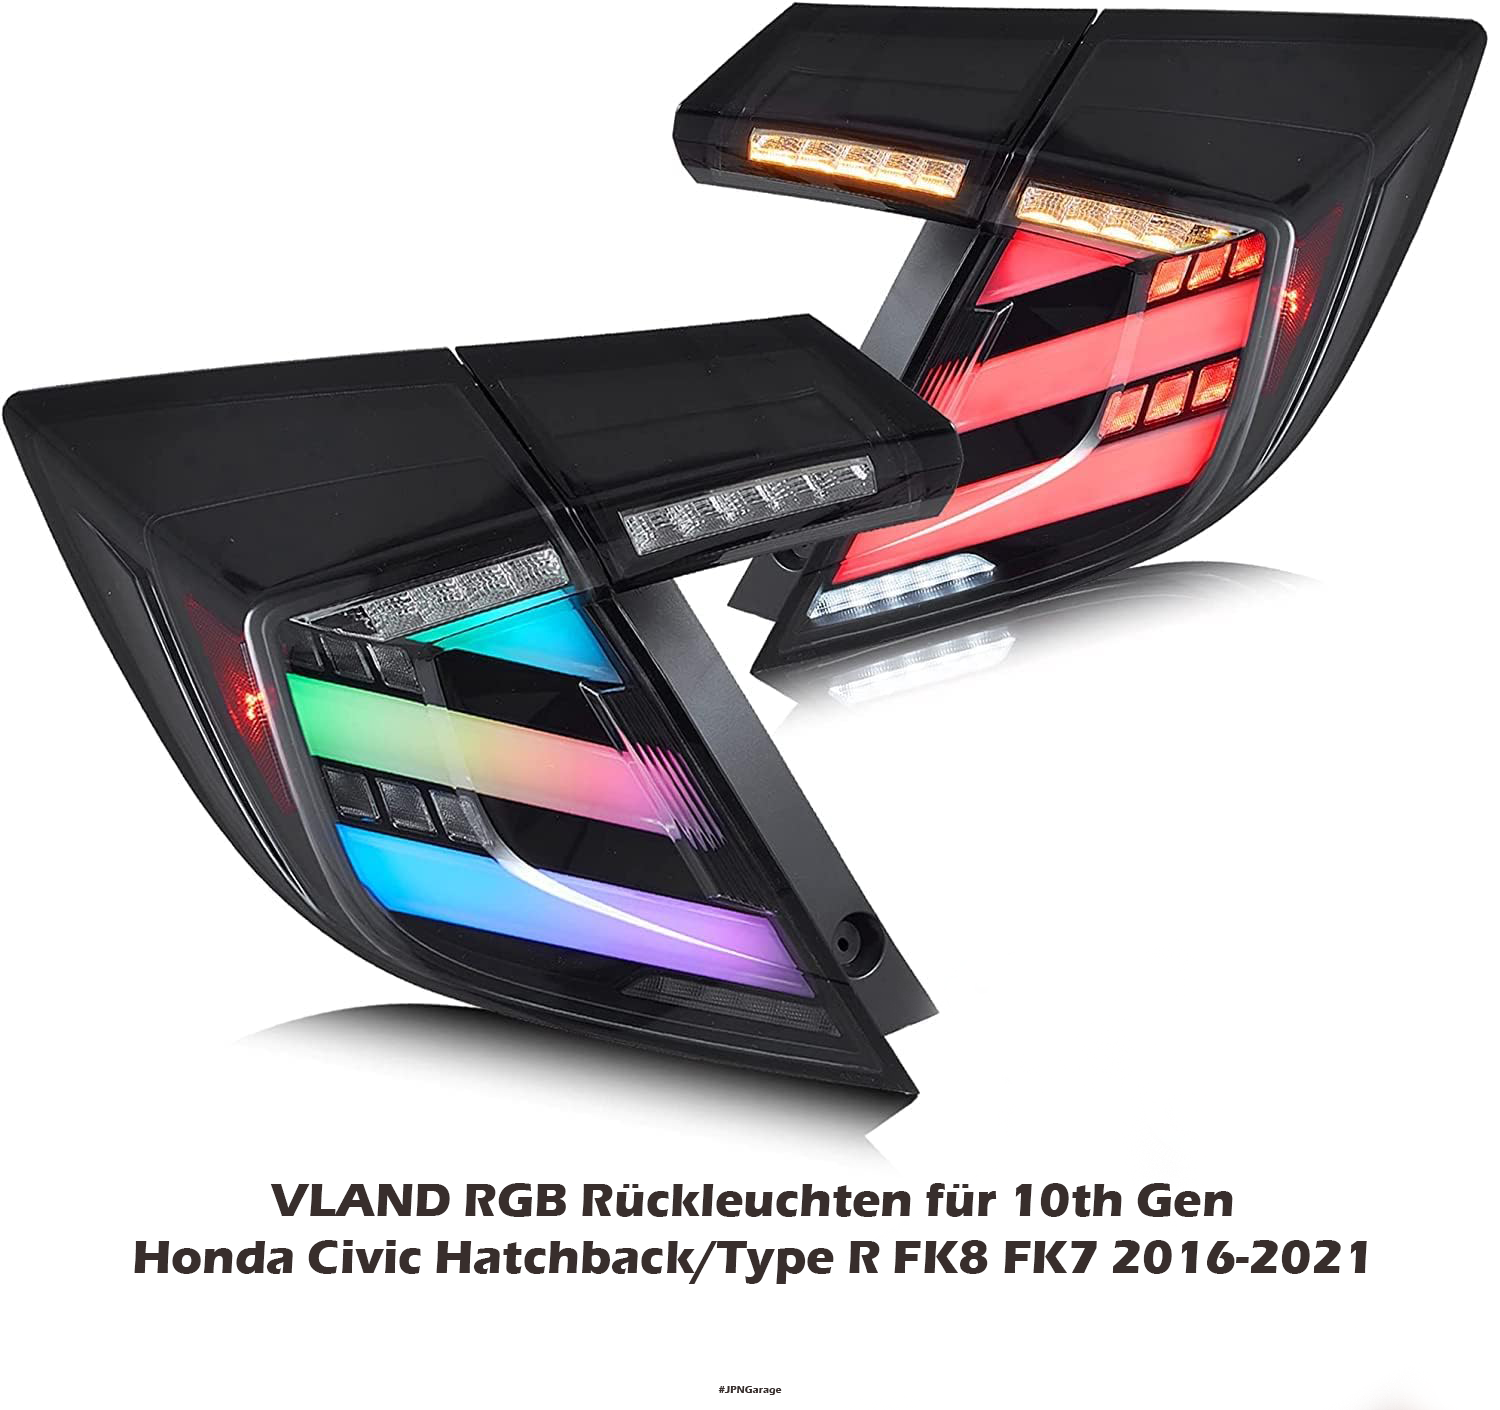 VLAND RGB Rückleuchten für 10th Gen Honda Civic Hatchback/Type R FK8 FK7 2016-2021 Heckleuchten,mit E-Prüfzeichen 